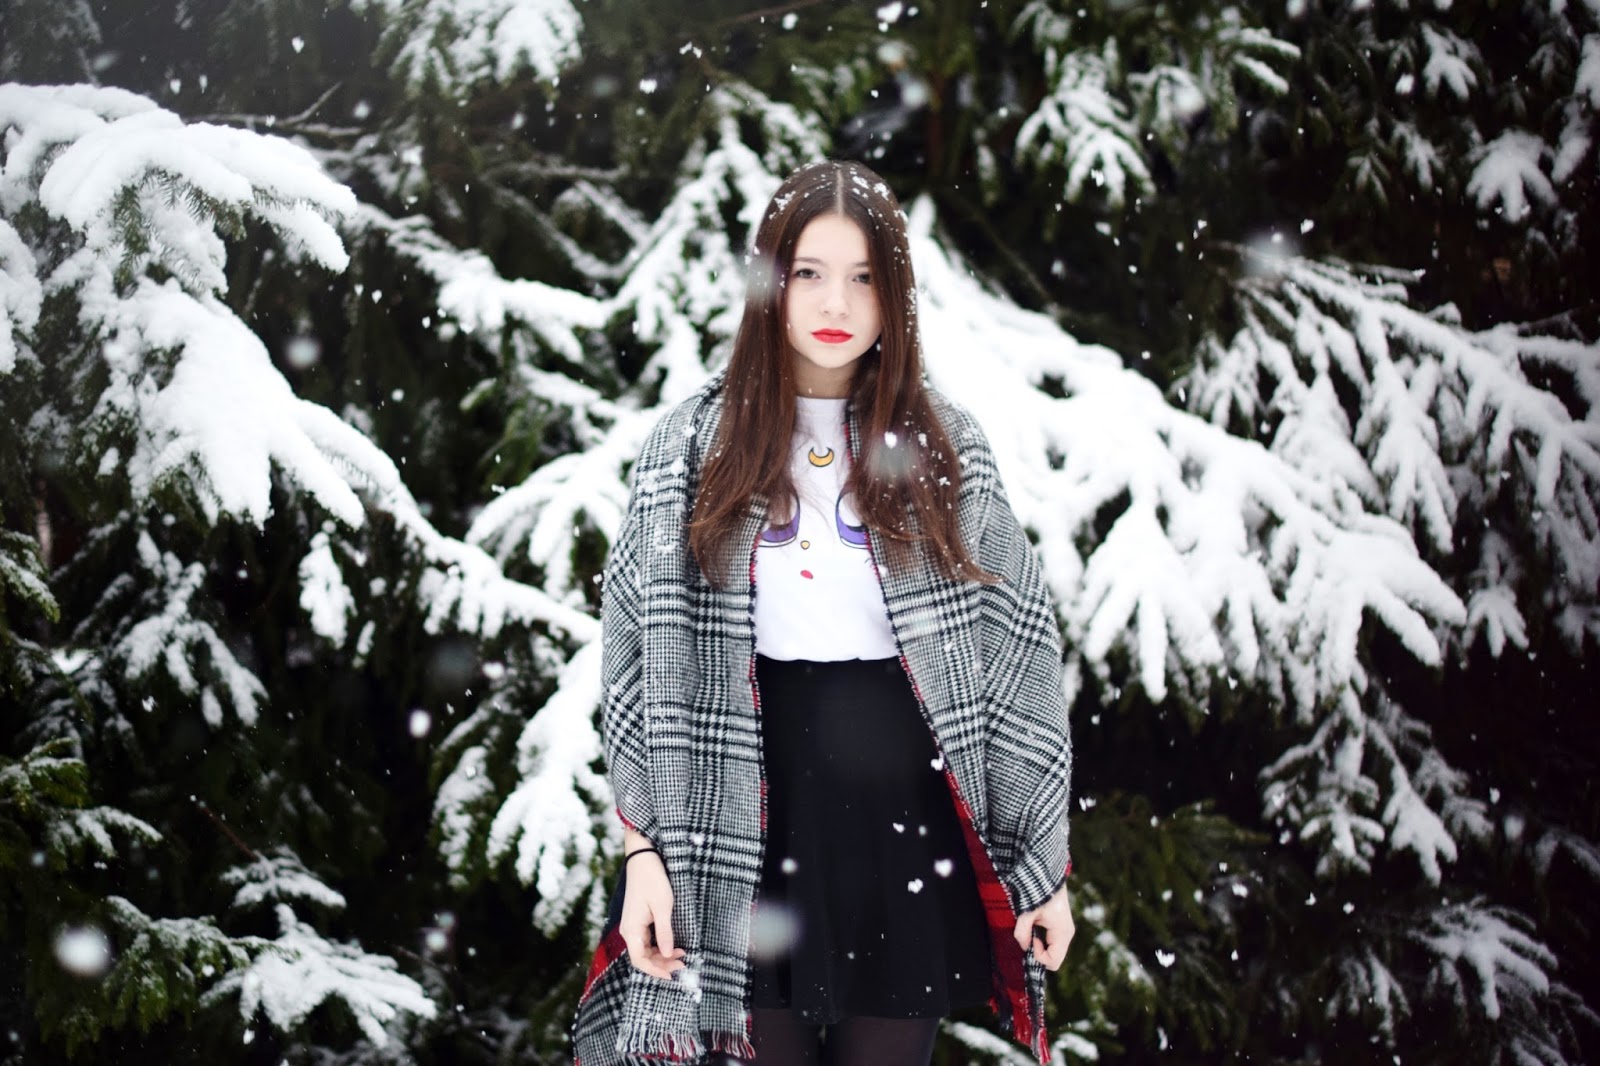 Julita Sudrawska: ❄ Snow is falling ❄